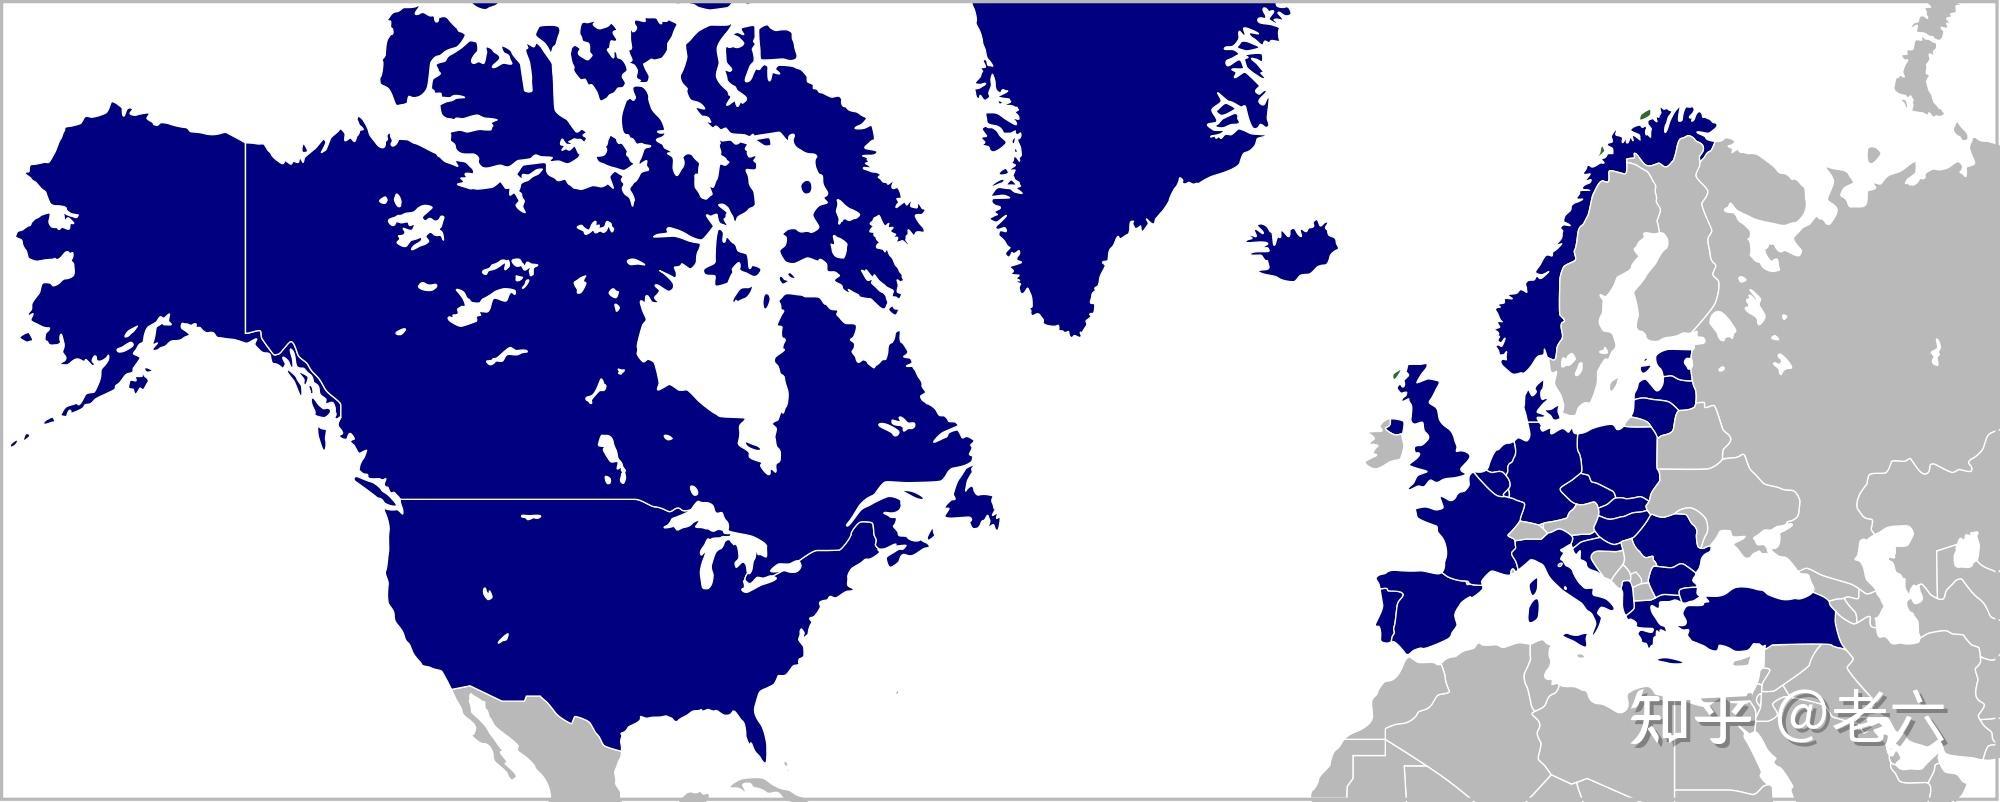 北大西洋公约组织 - 头条百科